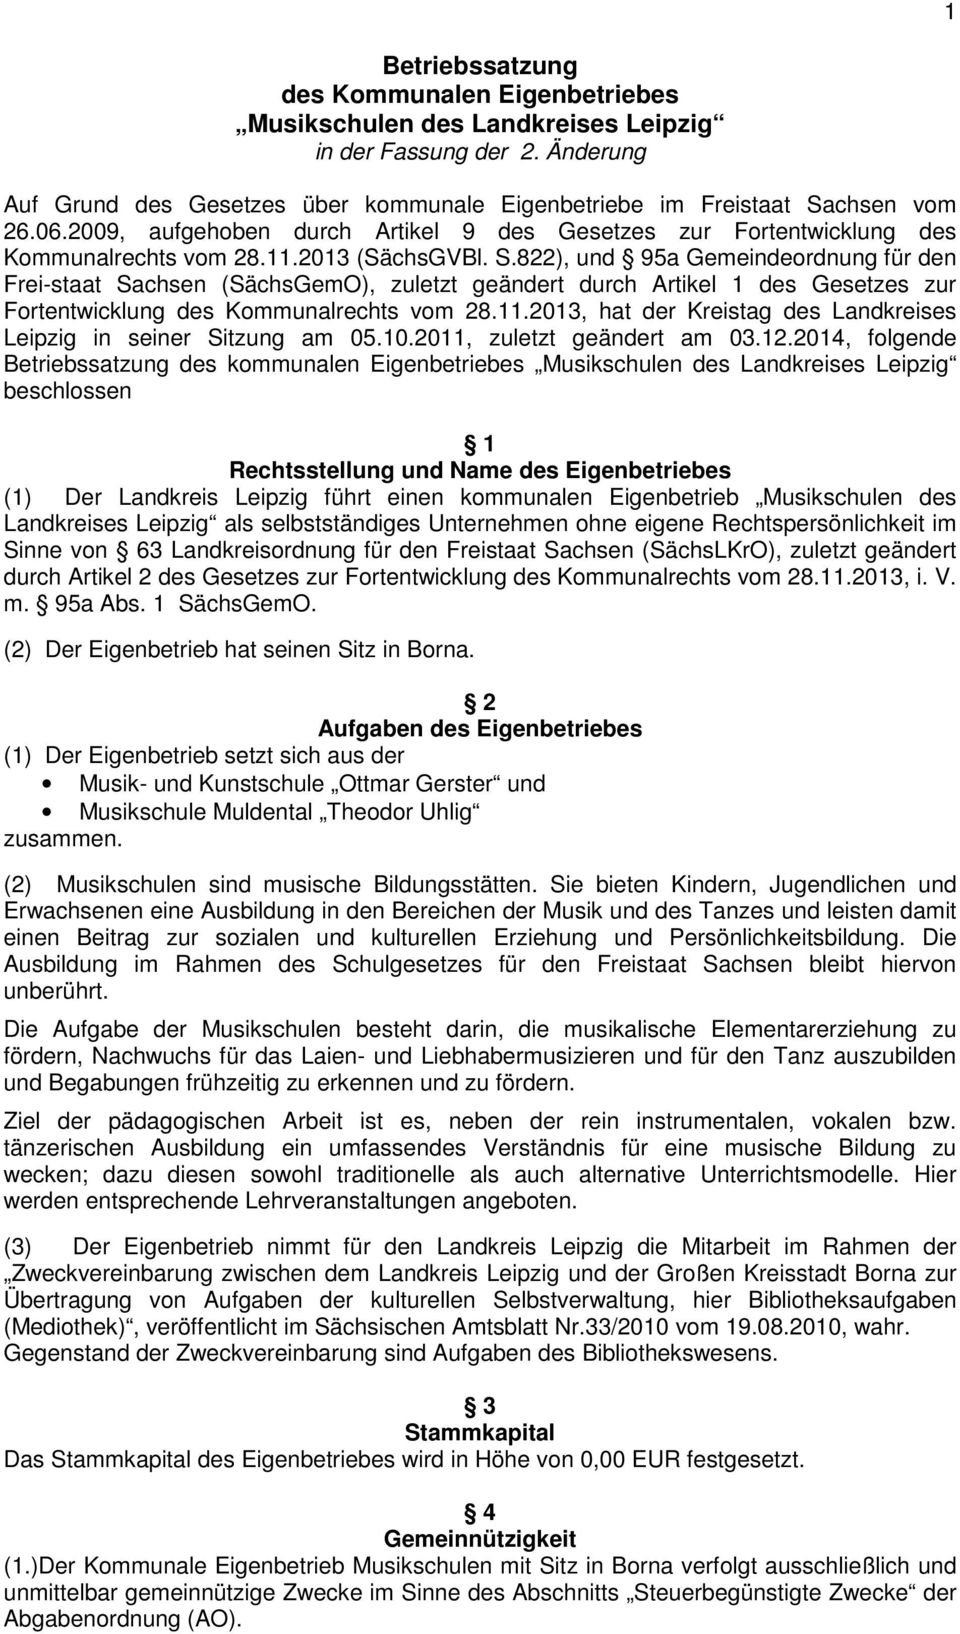 822), und 95a Gemeindeordnung für den Frei-staat Sachsen (SächsGemO), zuletzt geändert durch Artikel 1 des Gesetzes zur Fortentwicklung des Kommunalrechts vom 28.11.